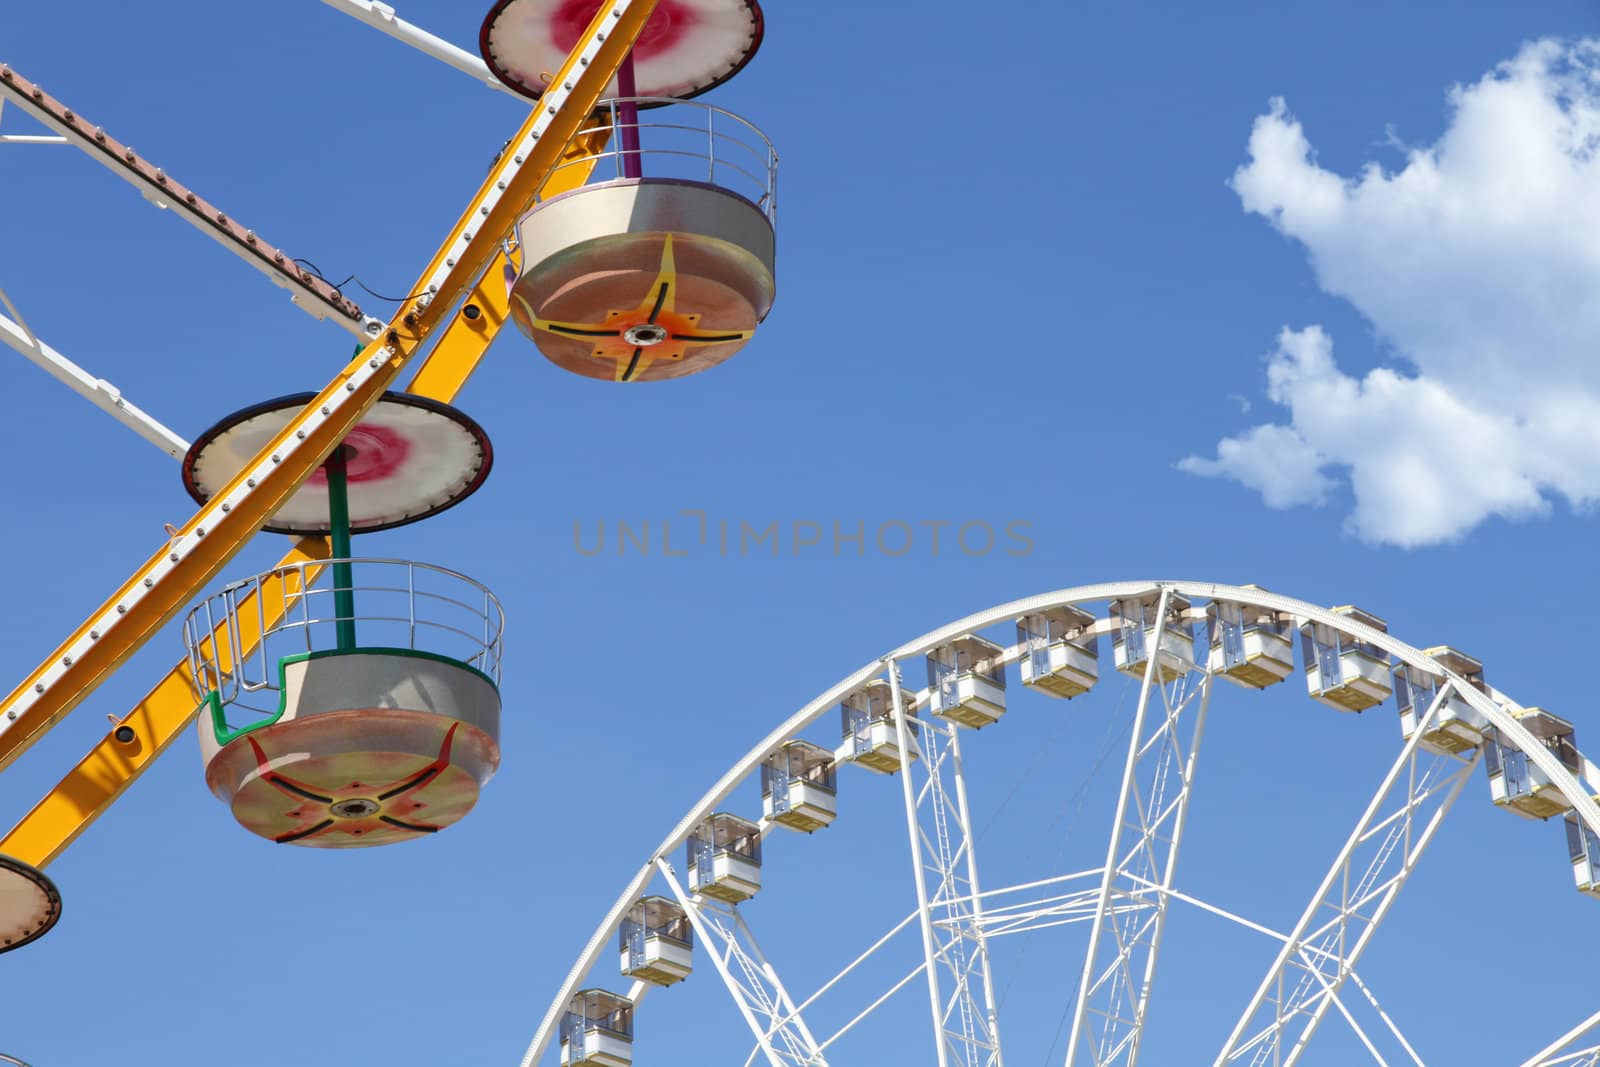 Ferris wheels in an amusement park by daboost